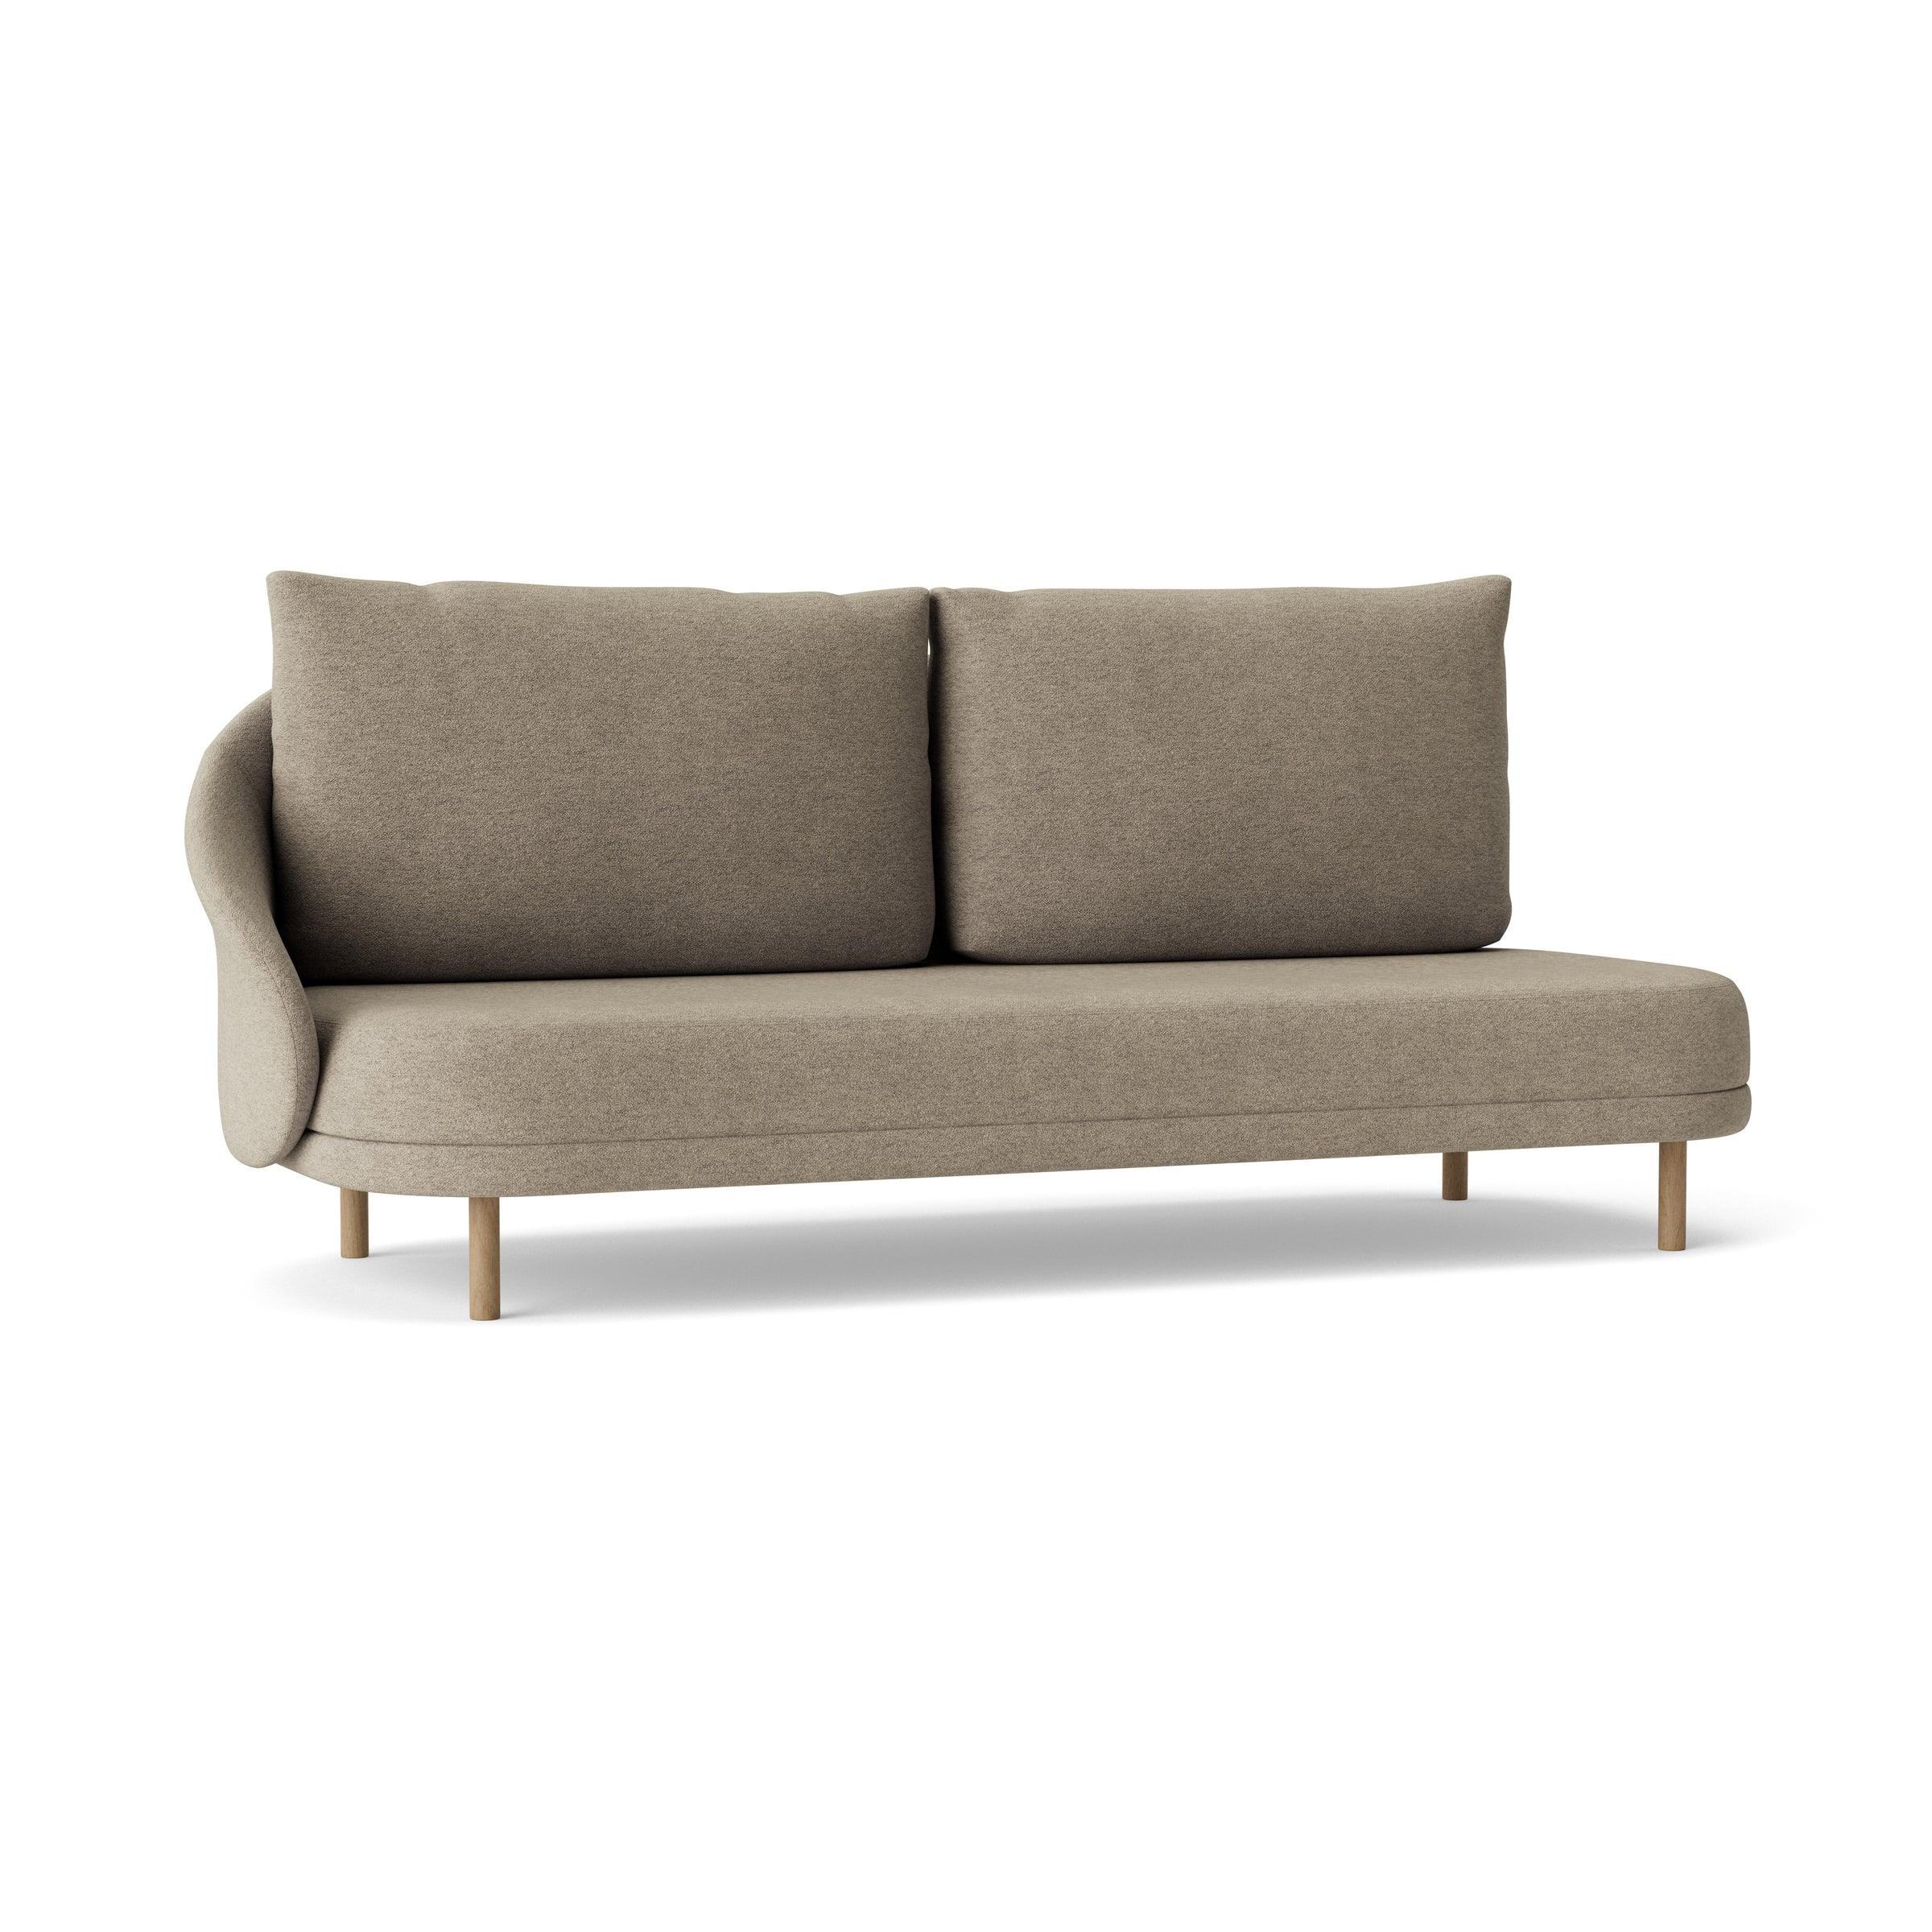 Sofa prawostronna NEW WAVE dębowy NORR11 naturalny dębowy tkanina boucle beżowy  Eye on Design